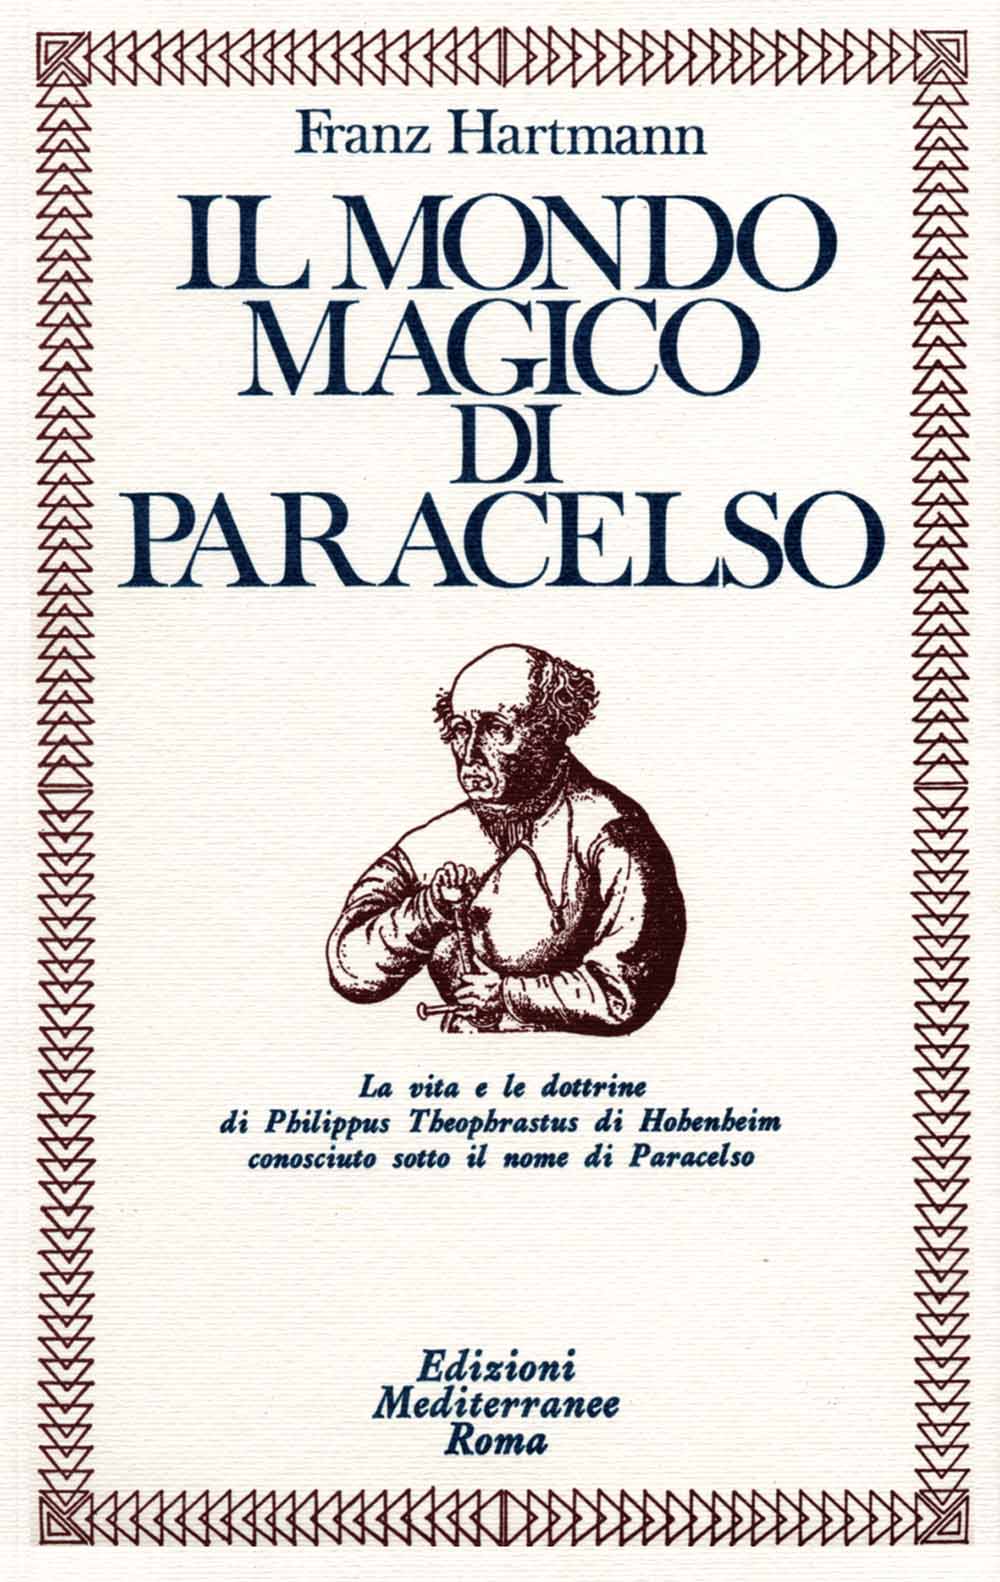 Libri Franz Hartmann - Il Mondo Magico Di Paracelso NUOVO SIGILLATO, EDIZIONE DEL 30/09/1983 SUBITO DISPONIBILE